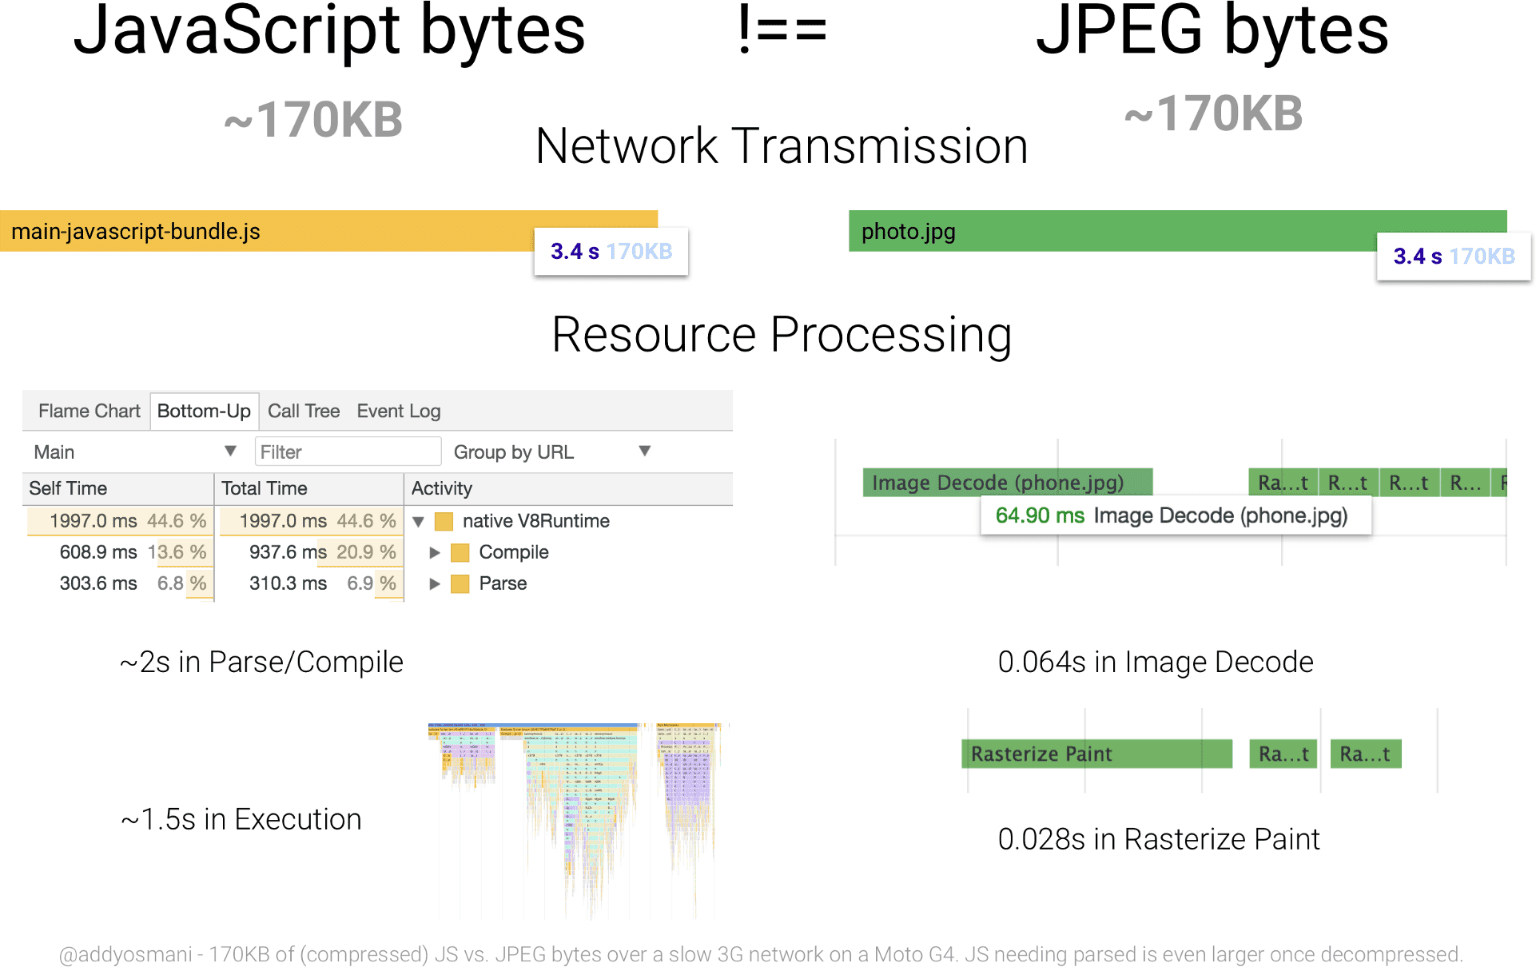 比较 170 KB JavaScript 与相同大小 JPEG 图片的处理时间的图表。与 JPEG 相比，JavaScript 资源对字节的资源占用量要大得多。